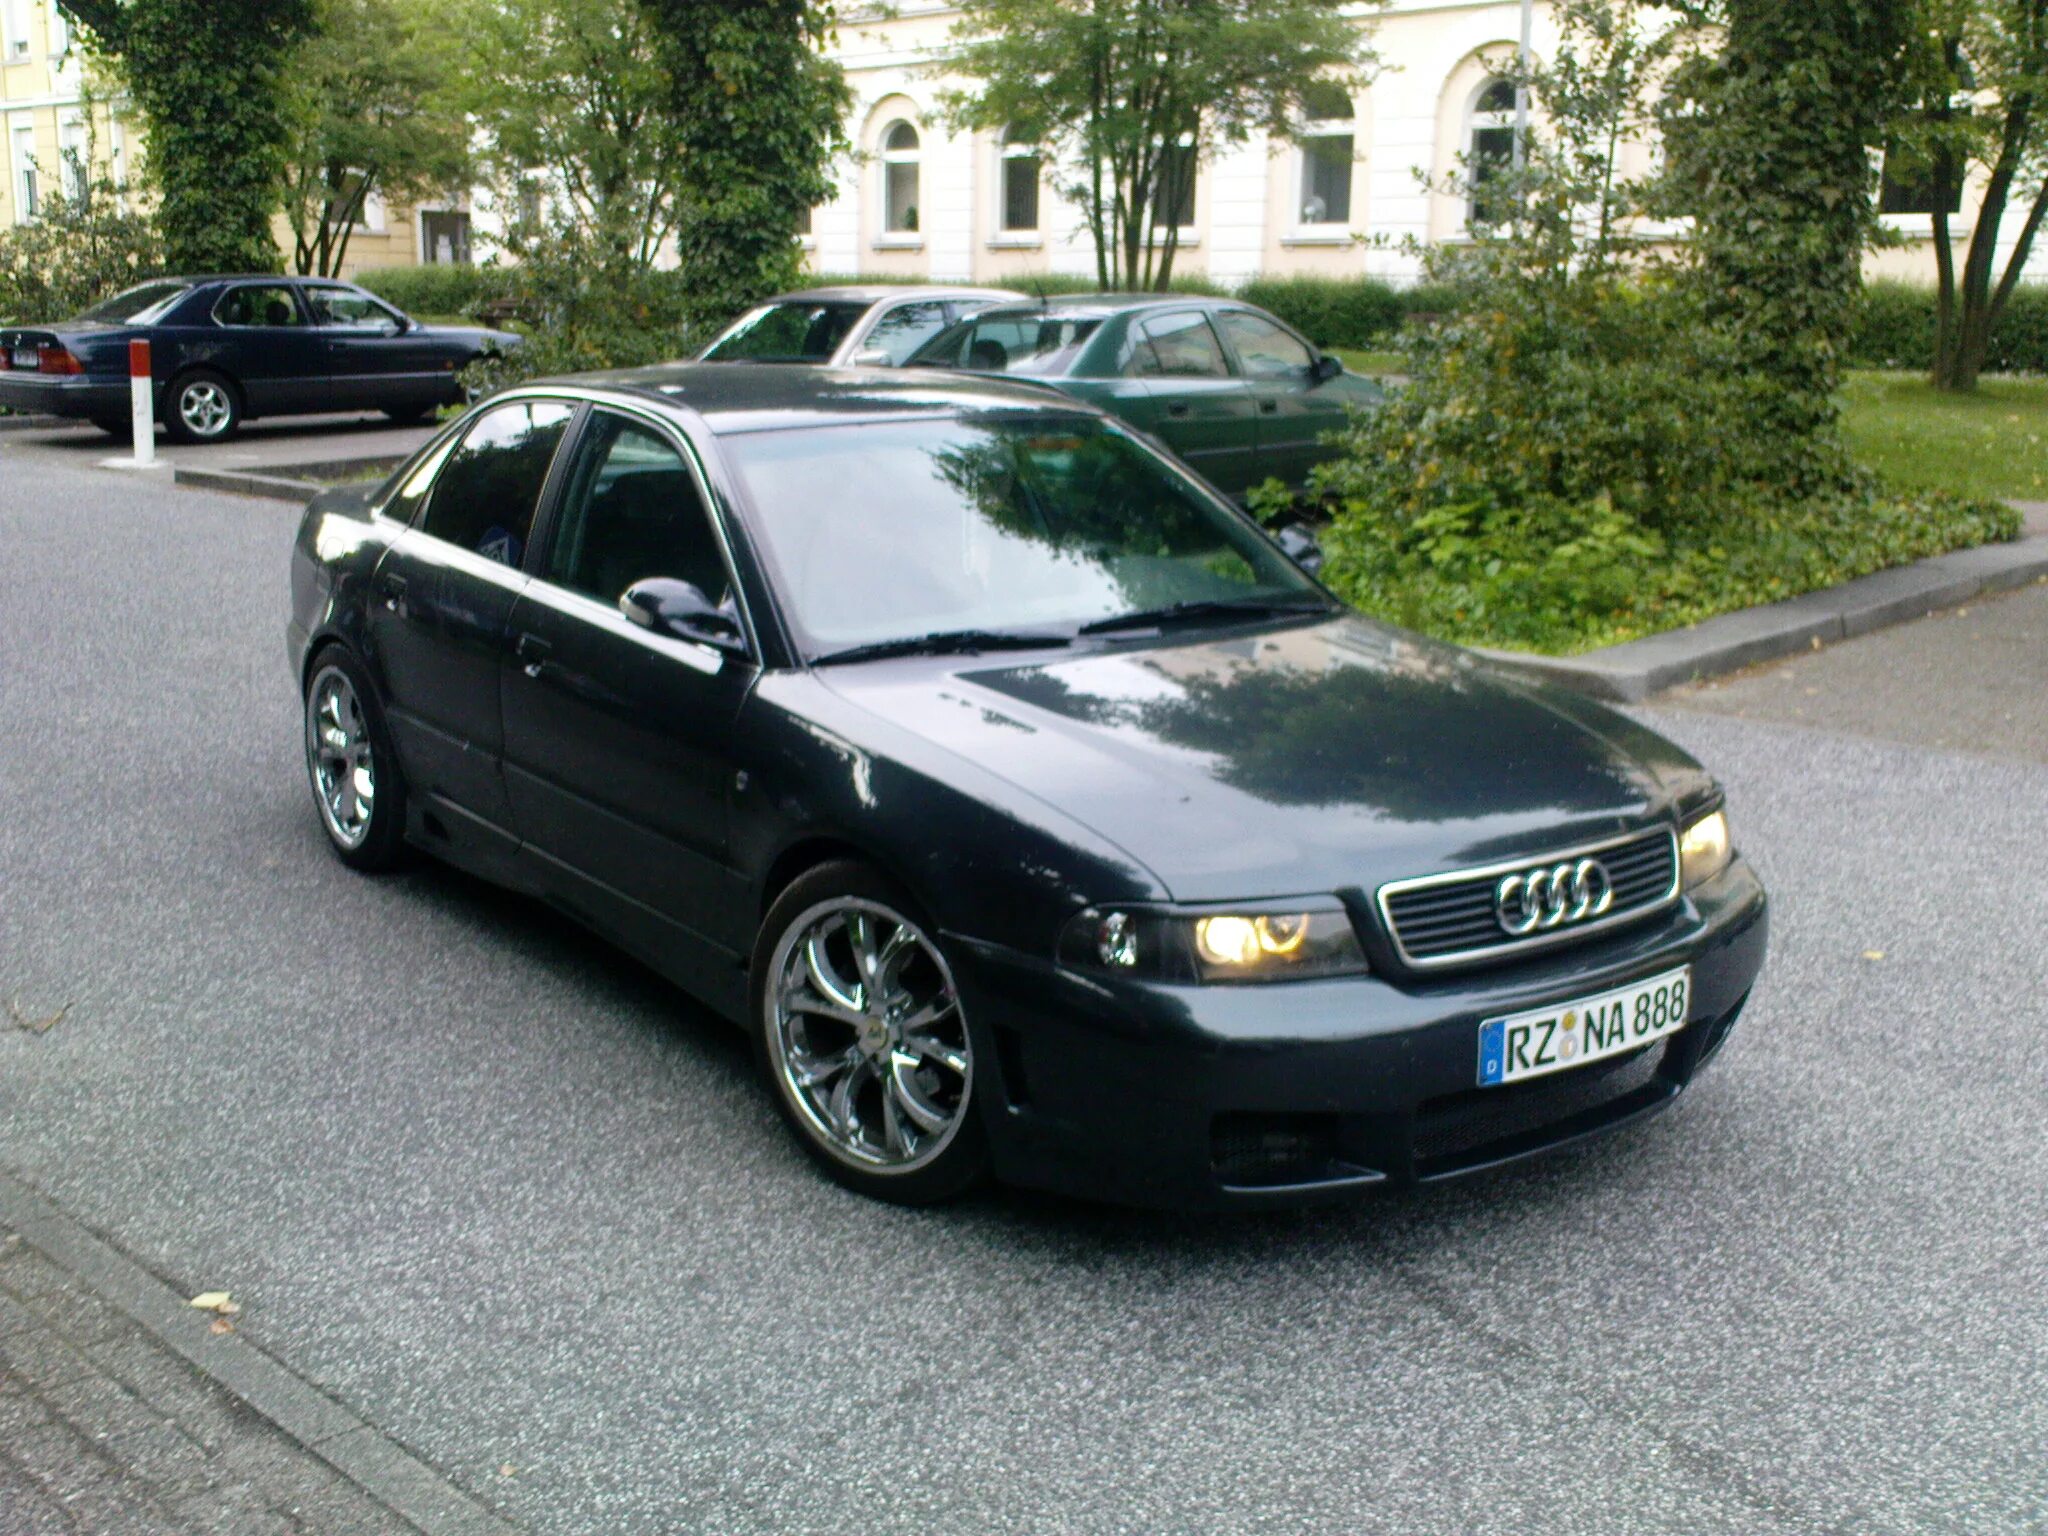 Audi a4 b5 2000. Audi a4 b5 1995. Audi a4 b5 1996. Audi a4 b5 1999.